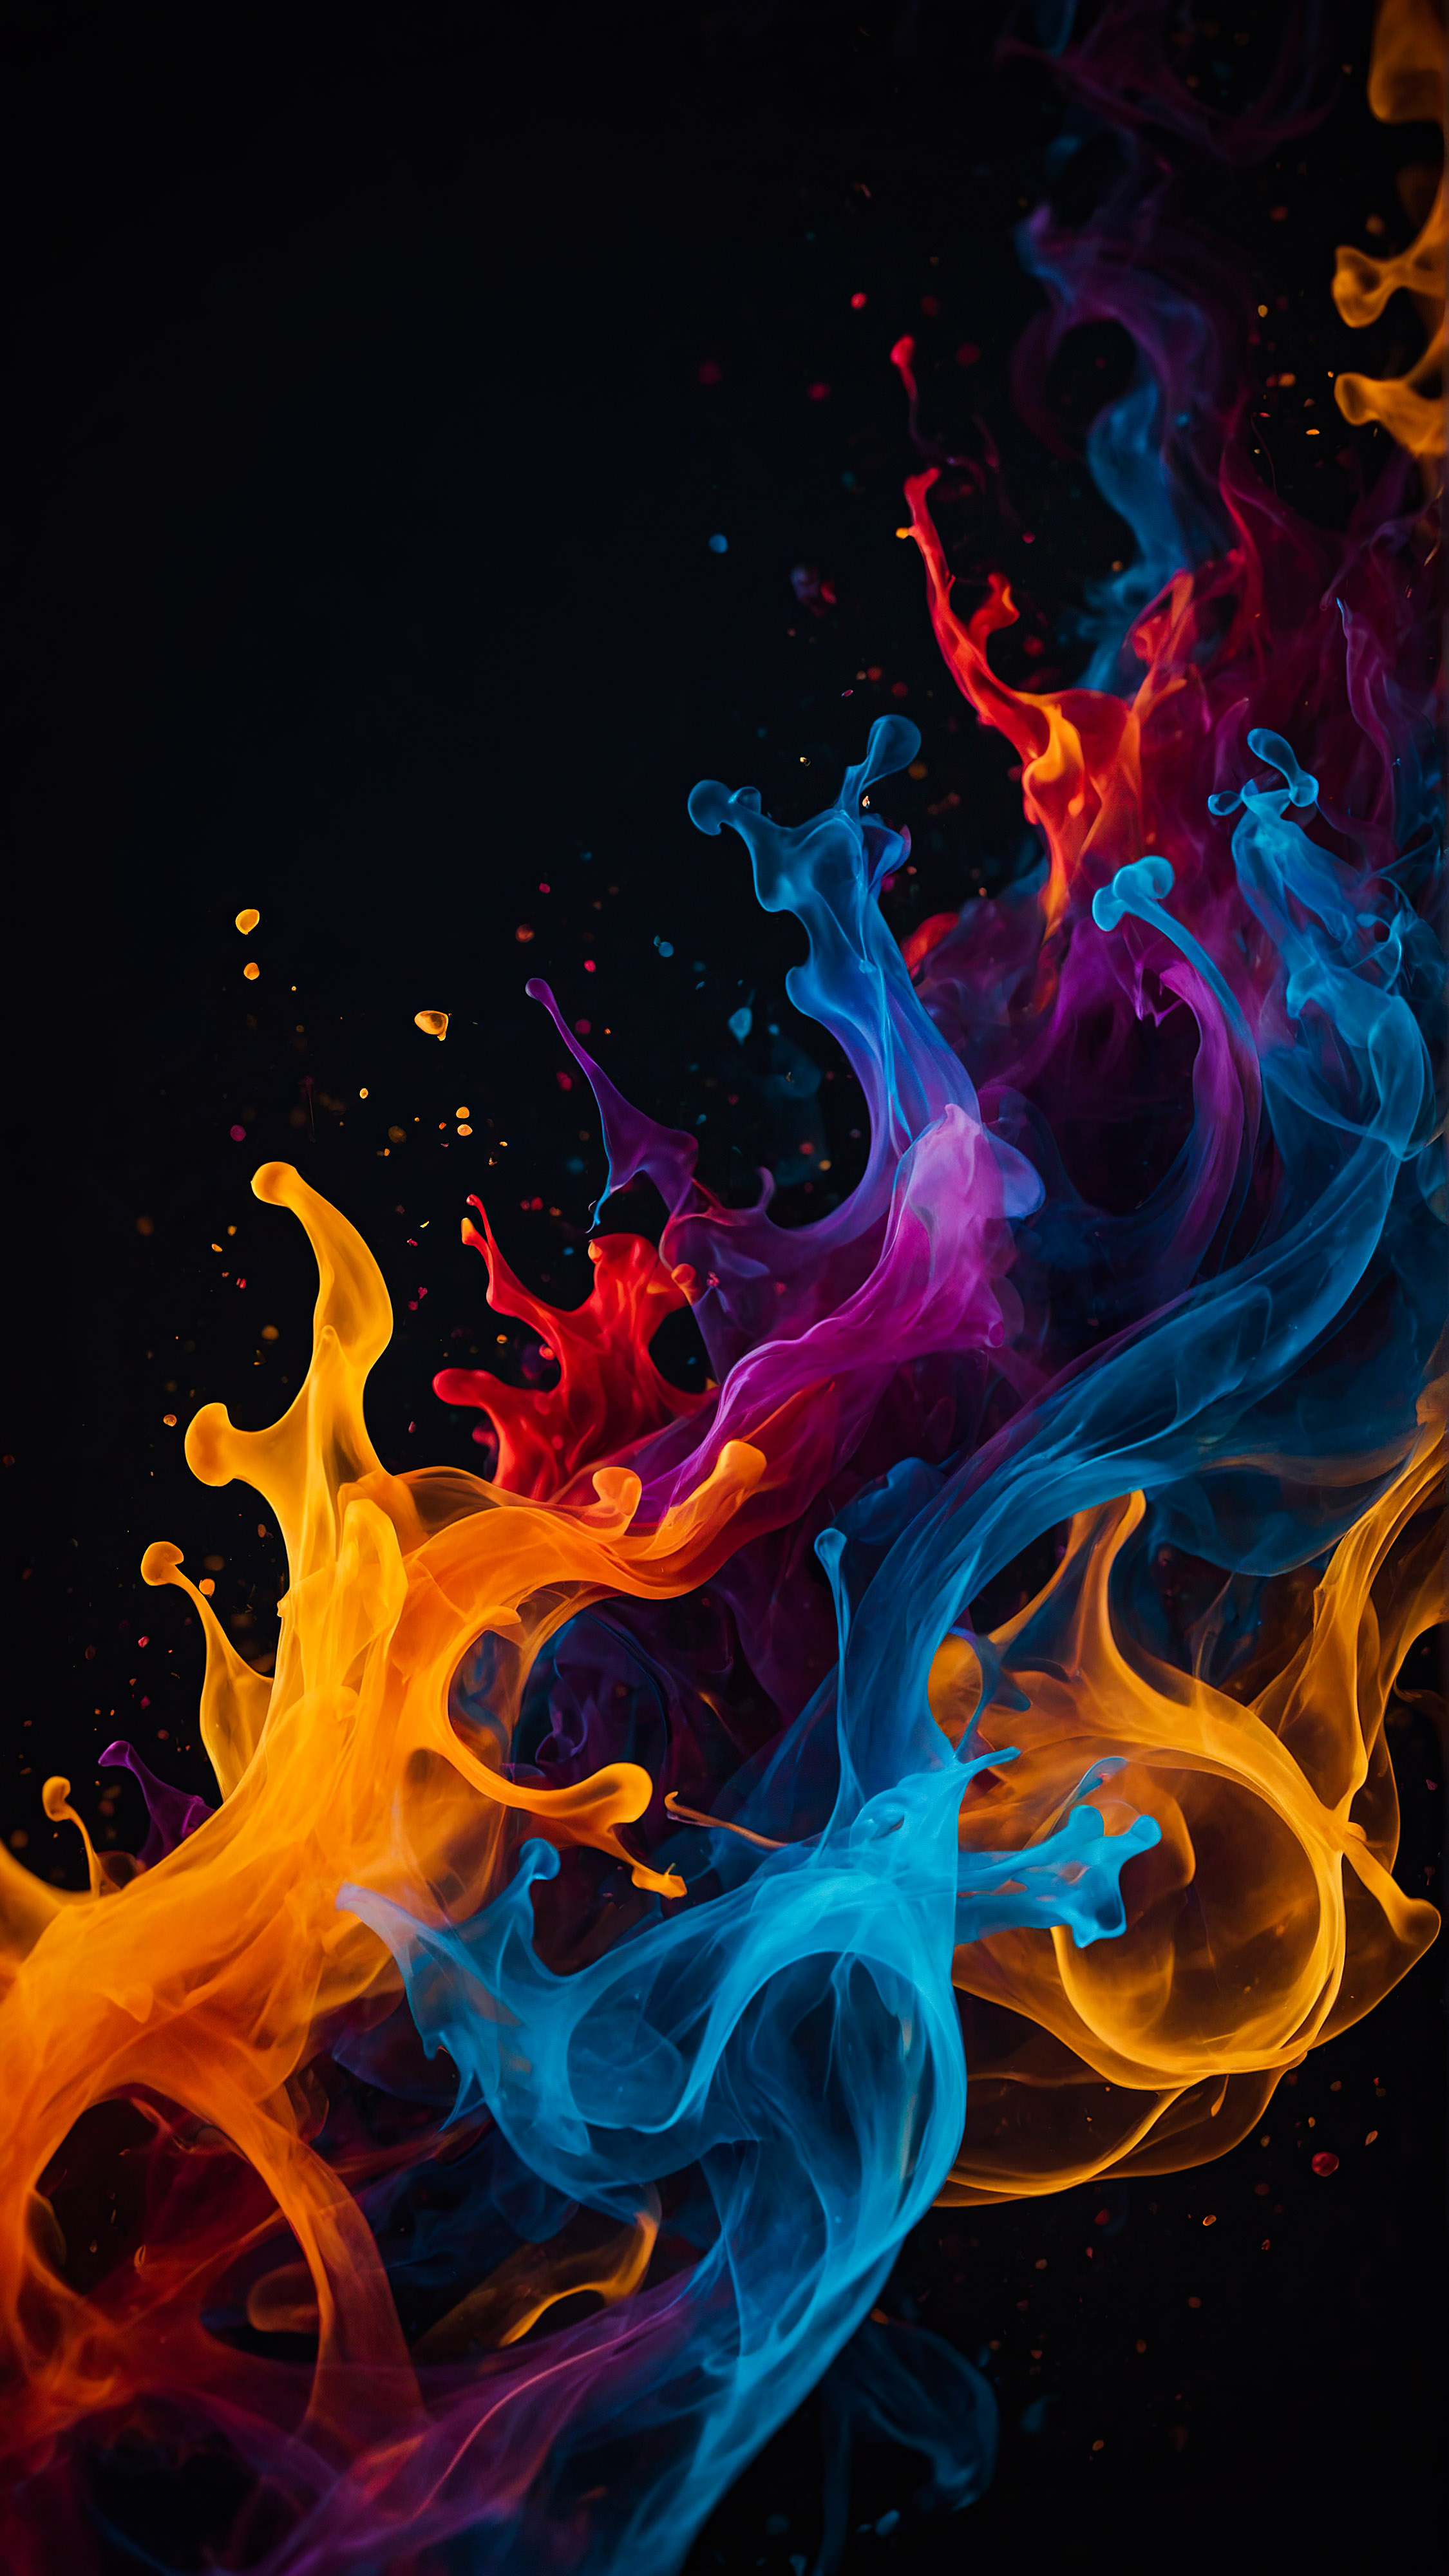 Obtenez un sens du mouvement et de l'énergie avec notre fond d'écran noir pour iPhone en 4K, présentant des formes abstraites entrelacées qui ressemblent à des flammes colorées sur un fond sombre.